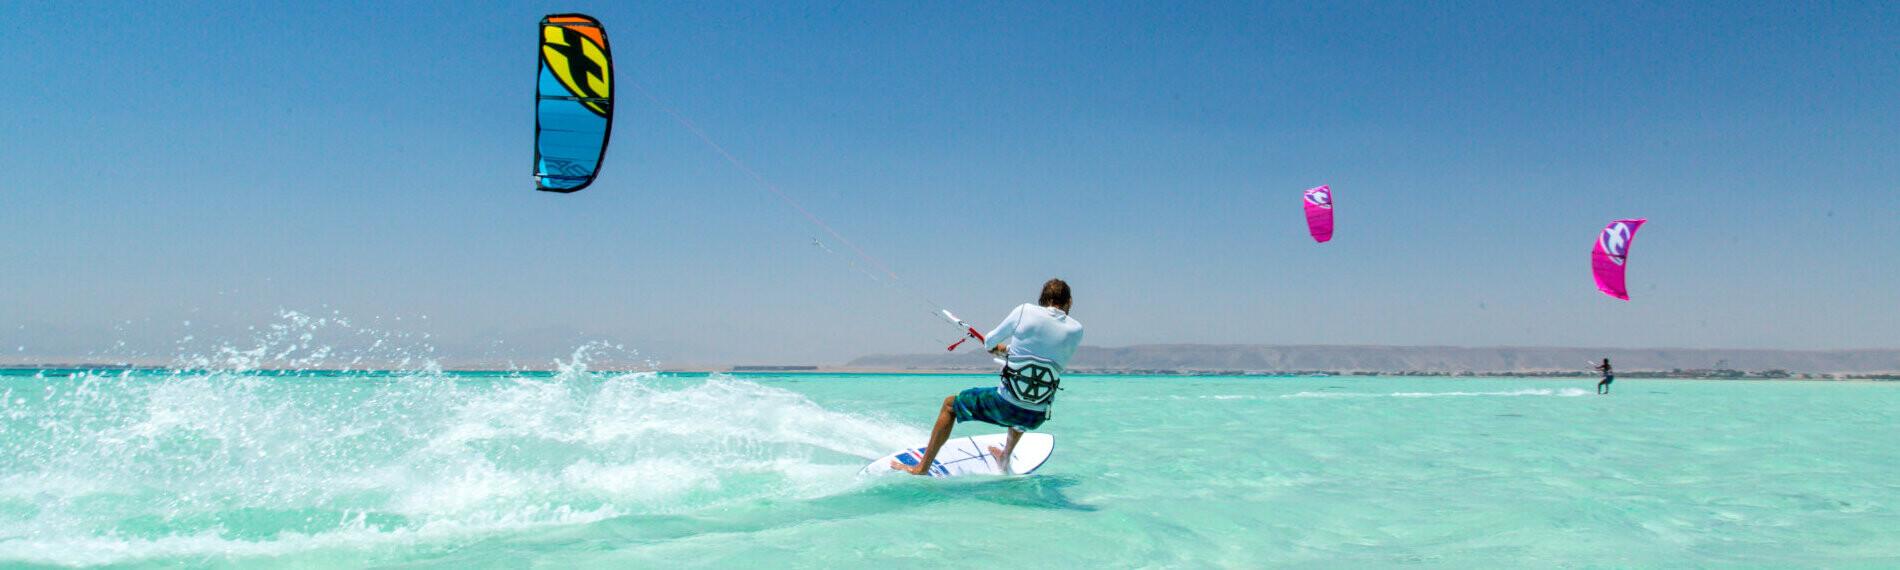 Person beim Kitesurfen in El Gouna auf türkisfarbenem Wasser mit anderen Kitesurfern im Hintergrund.